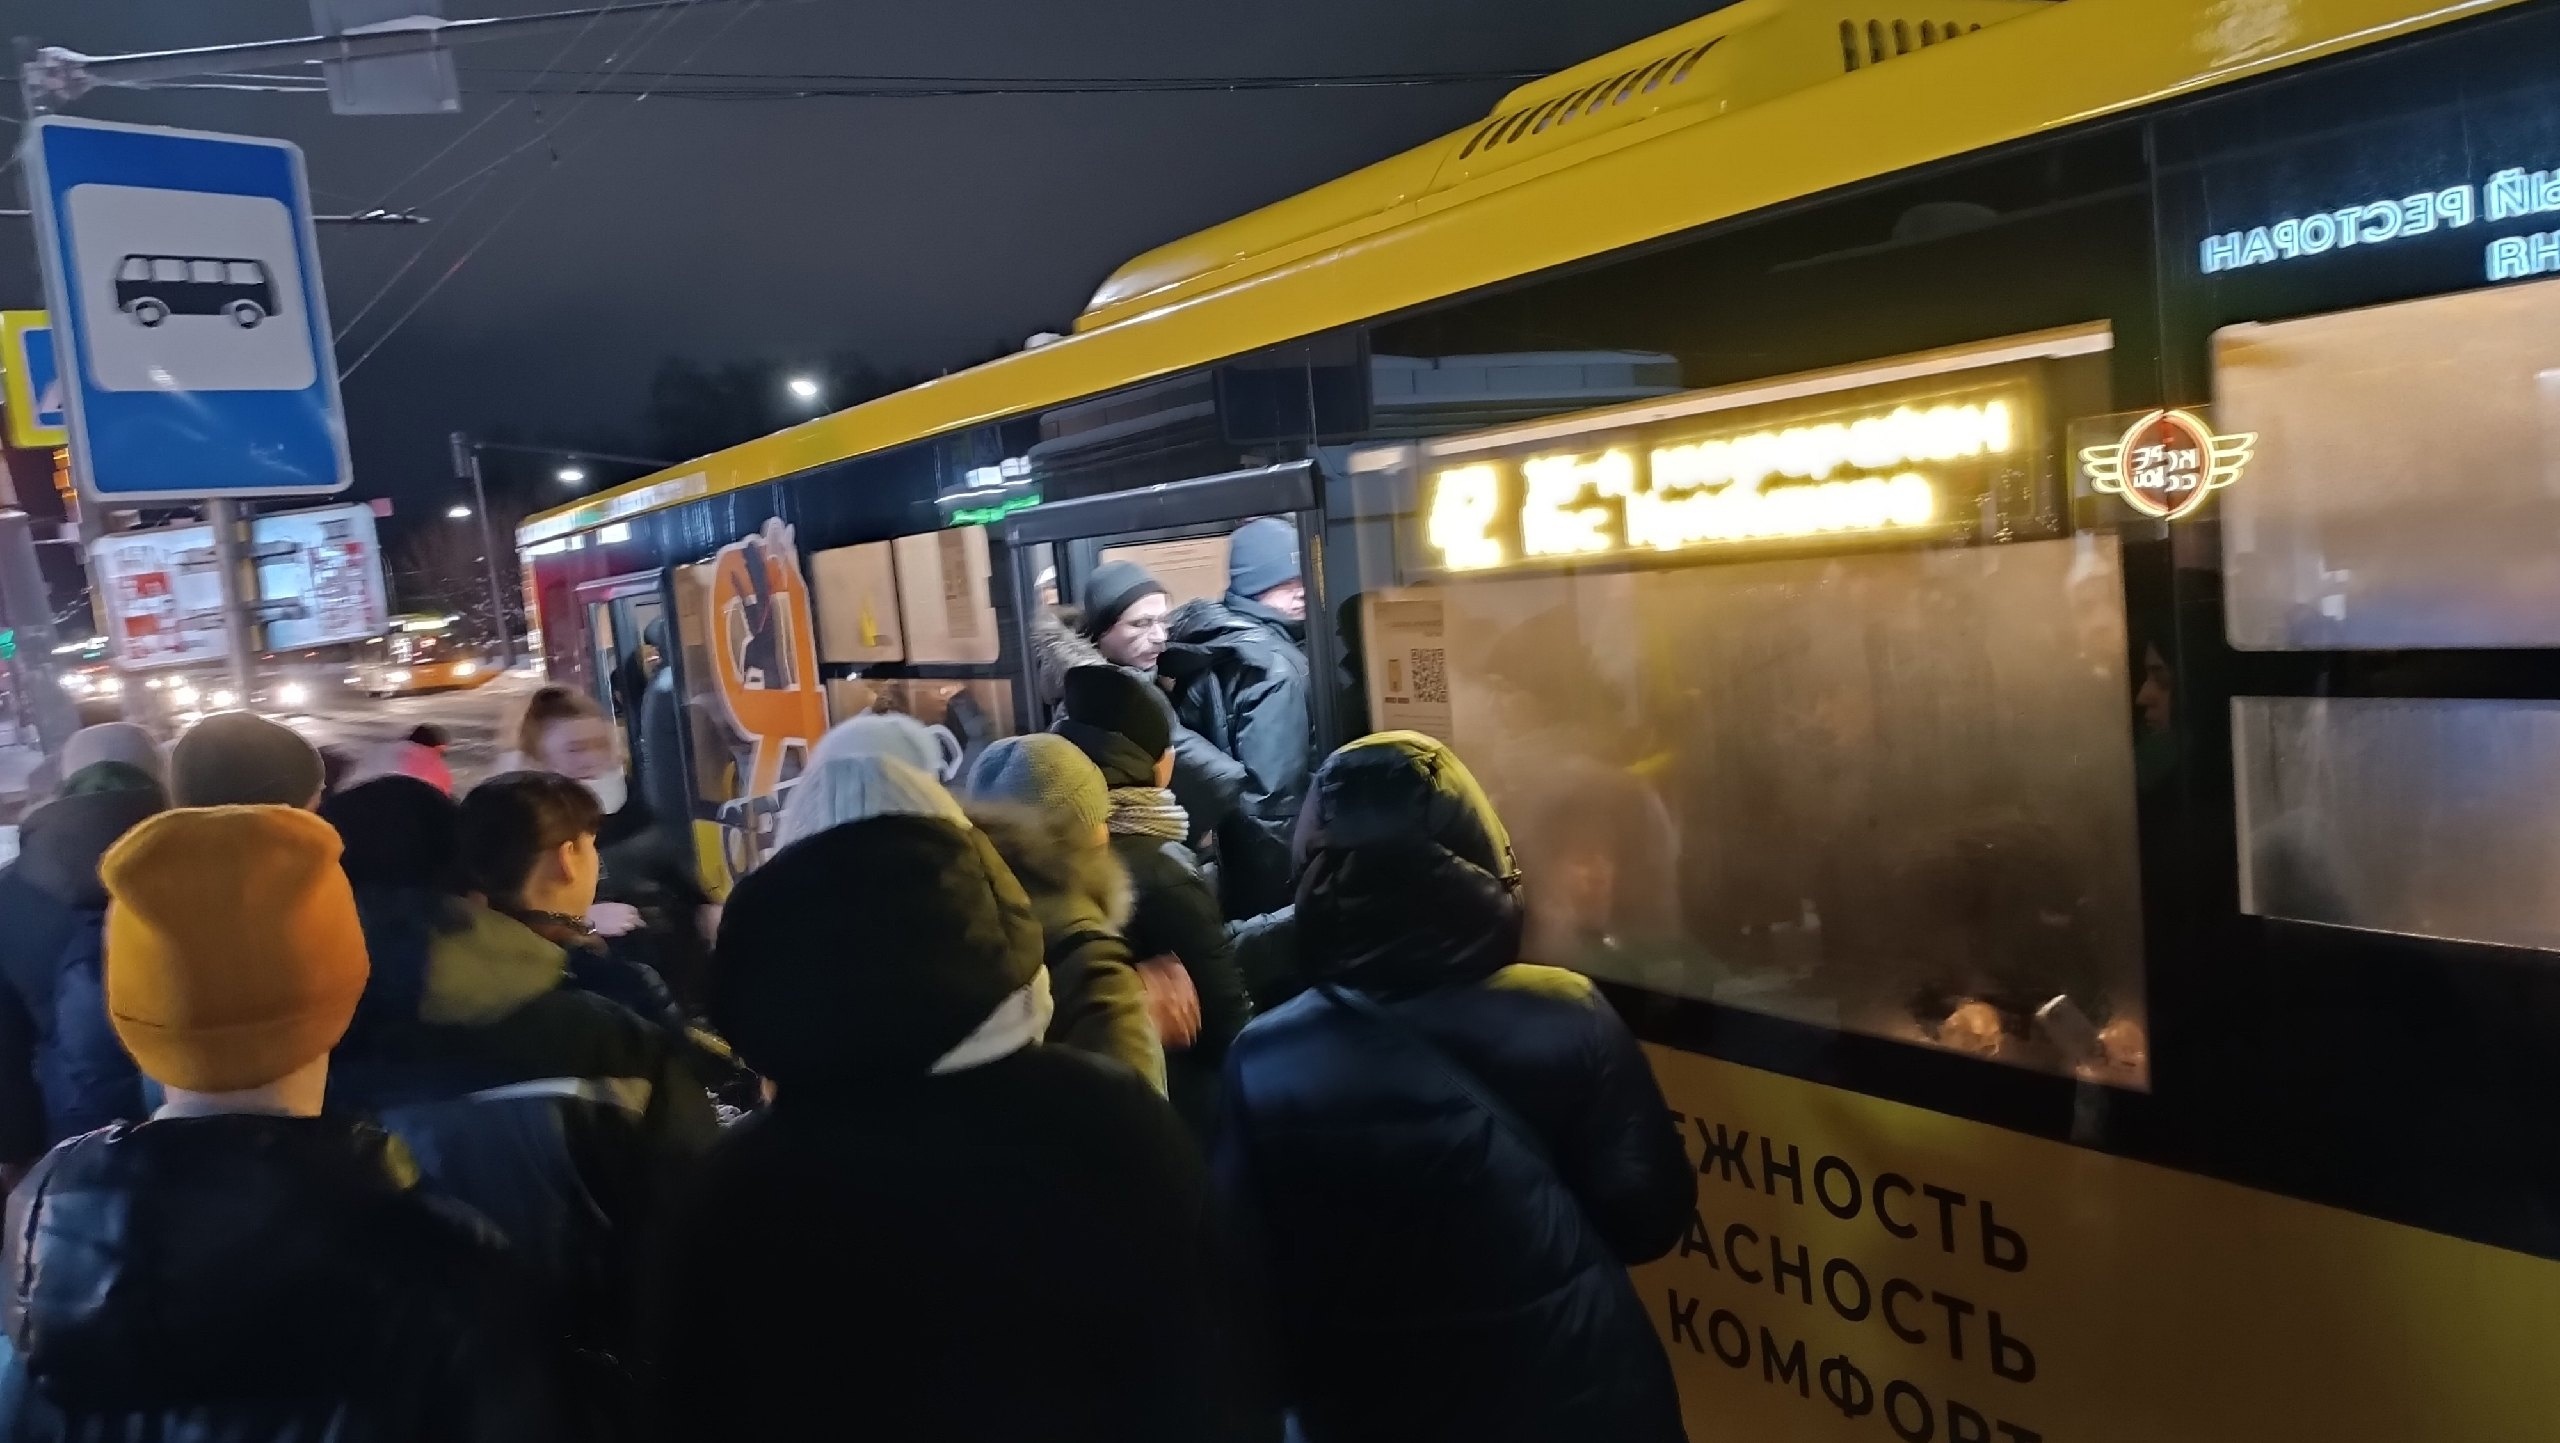  "Давка, адовая духота и пробка": ярославцы пожаловались на 30 градусов в автобусах